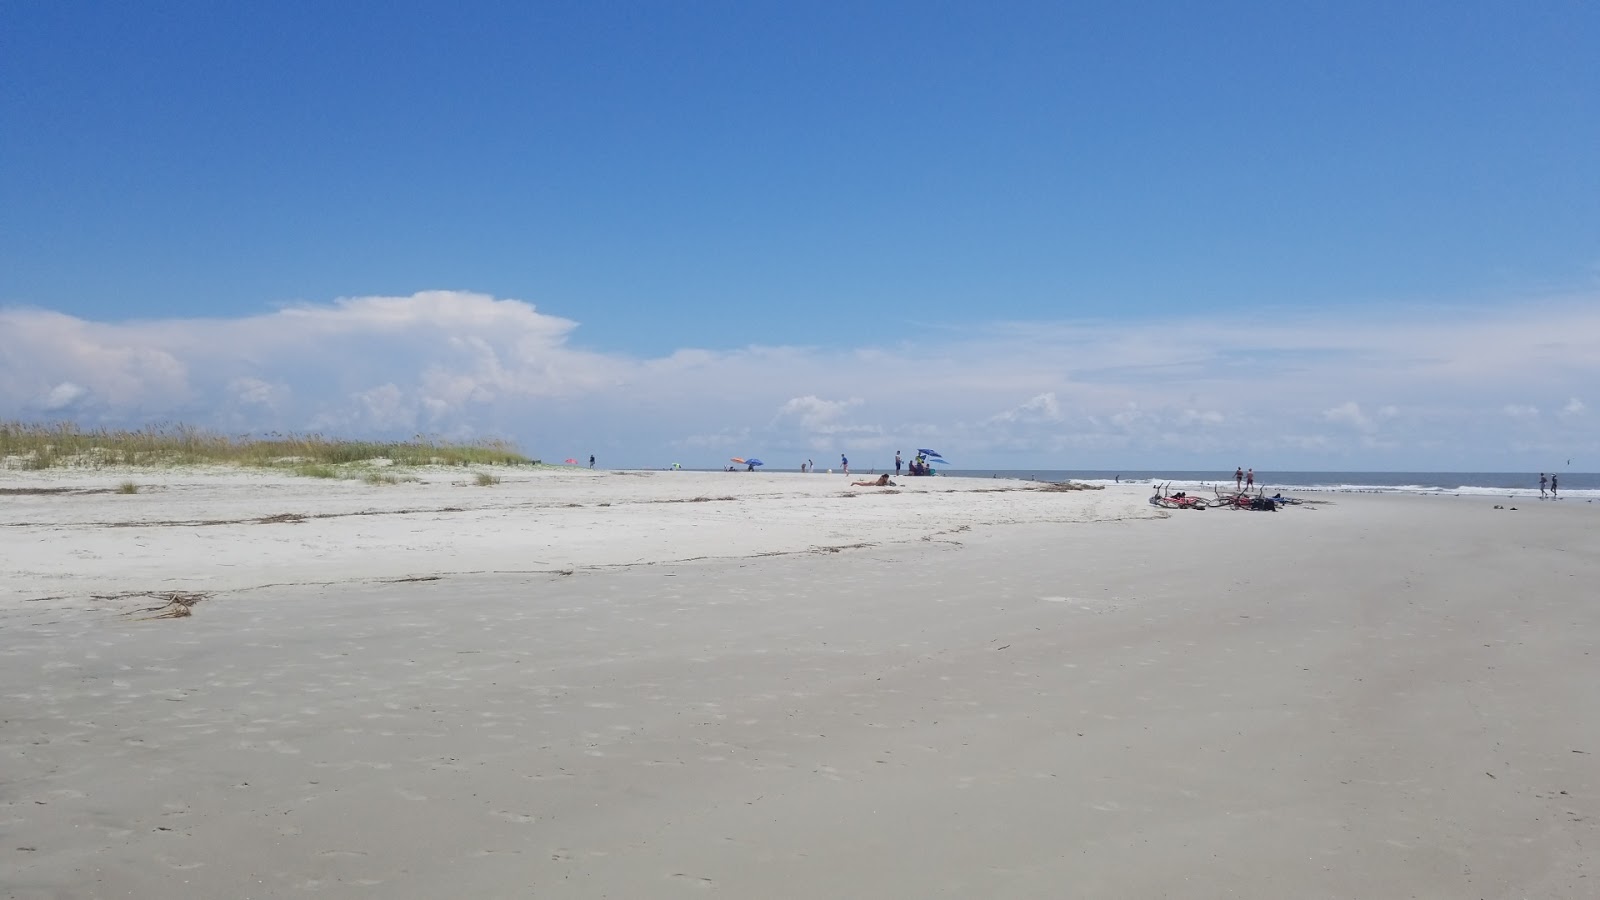 Zdjęcie Burkes beach - popularne miejsce wśród znawców relaksu